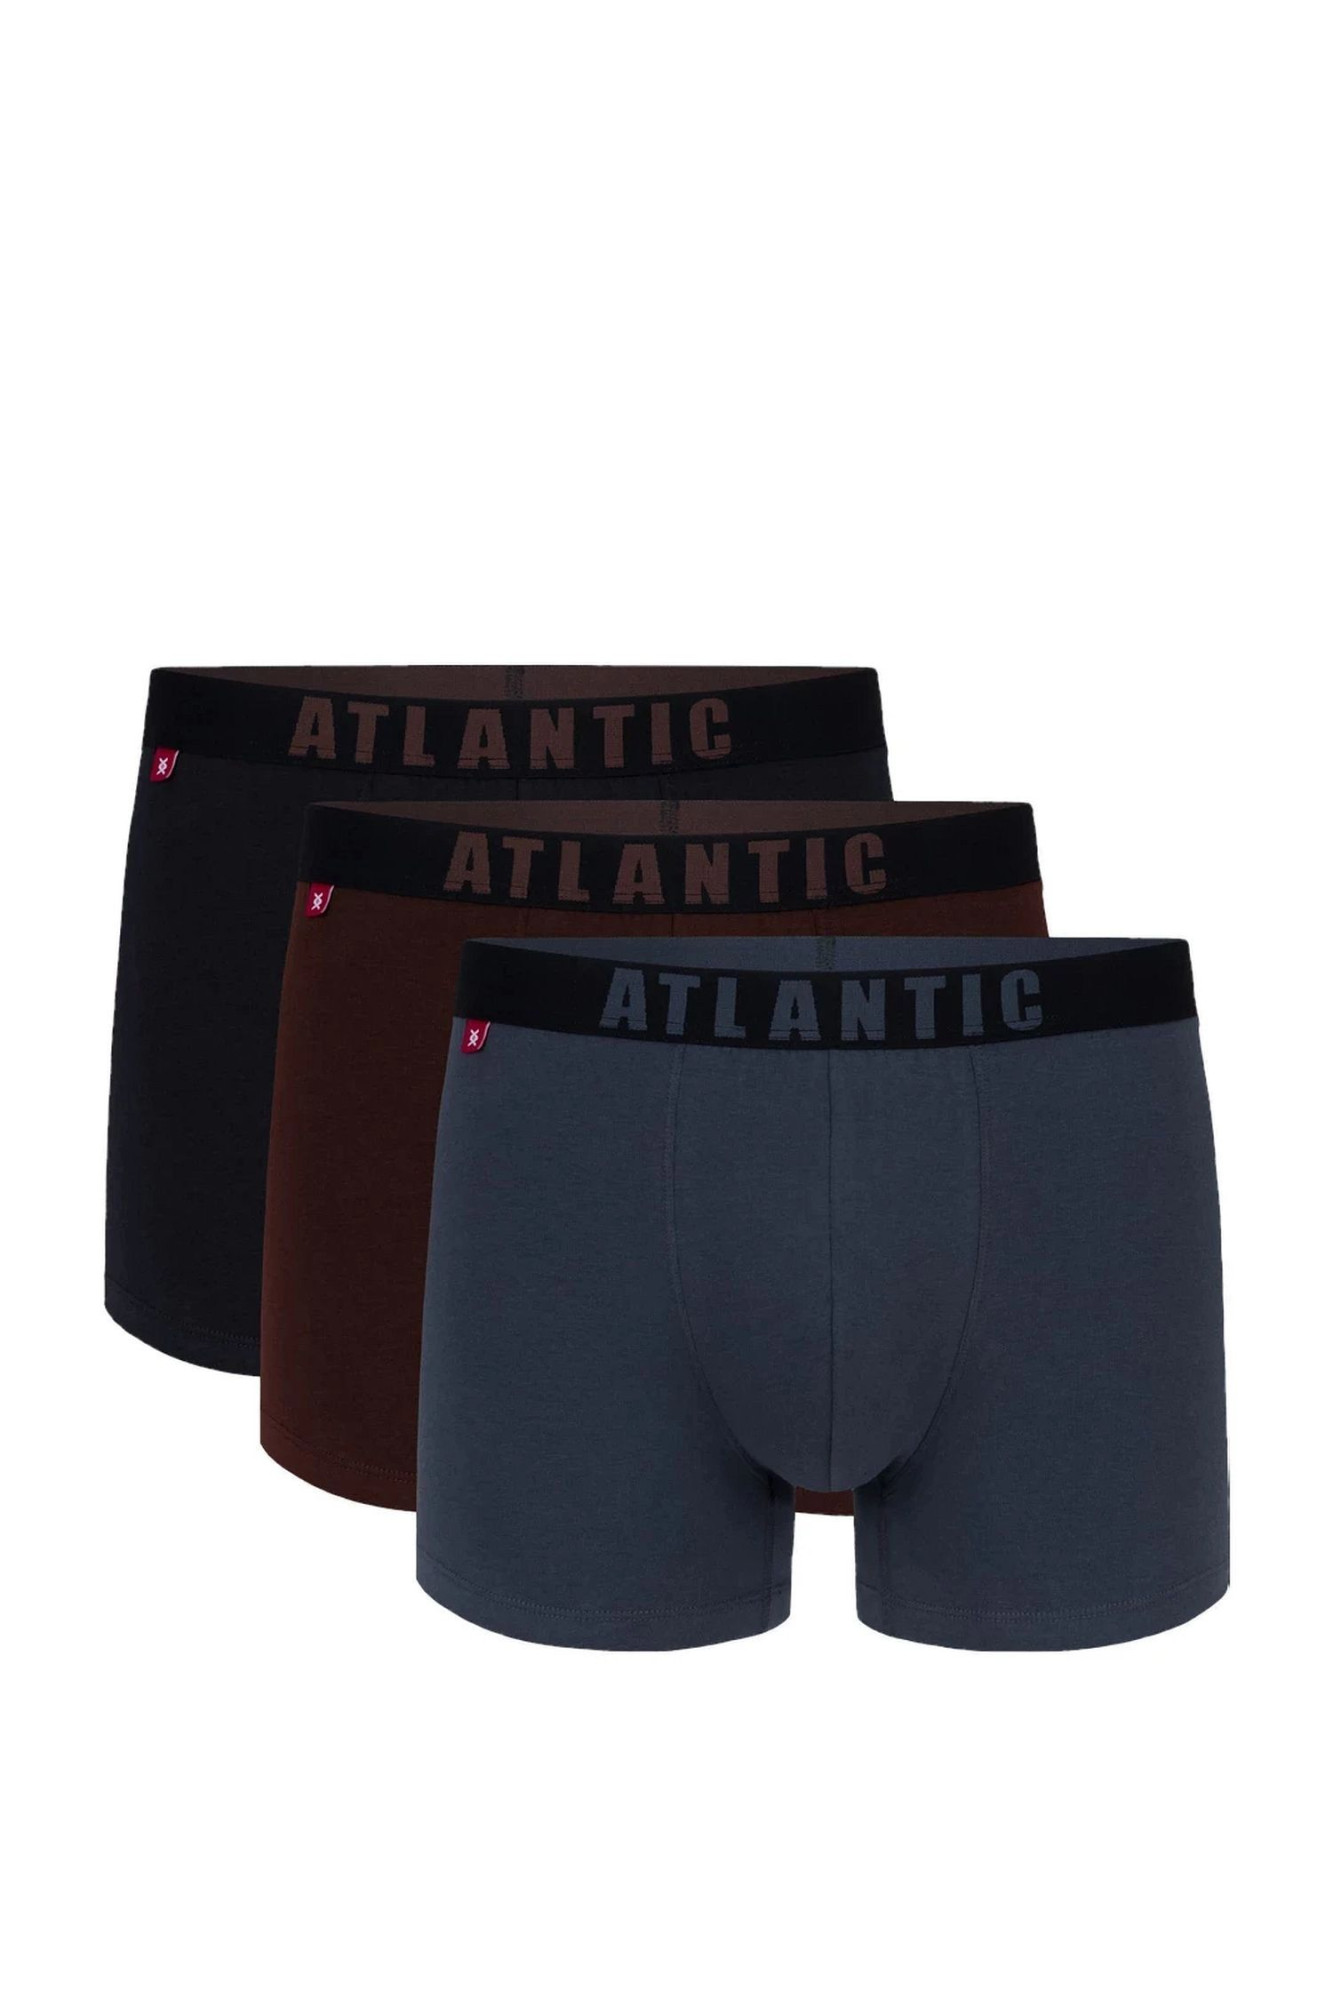 Pánské boxerky 3 pack 011/02 - Atlantic vícebarevná M